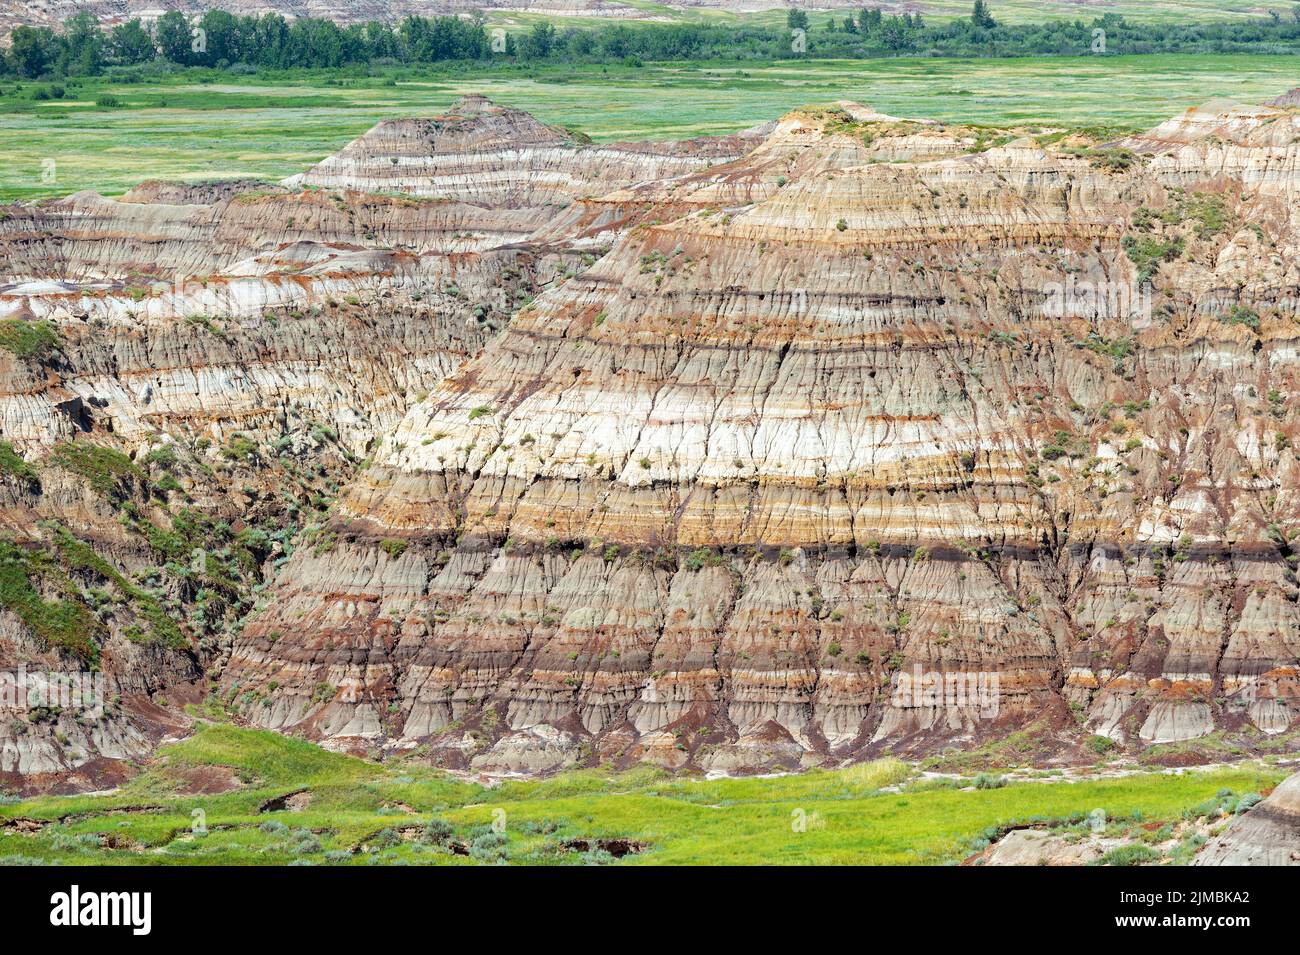 Gros plan des couches de strates rocheuses dans les Badlands de l'Alberta du parc provincial Dinosaur, Drumheller, Canada. Banque D'Images